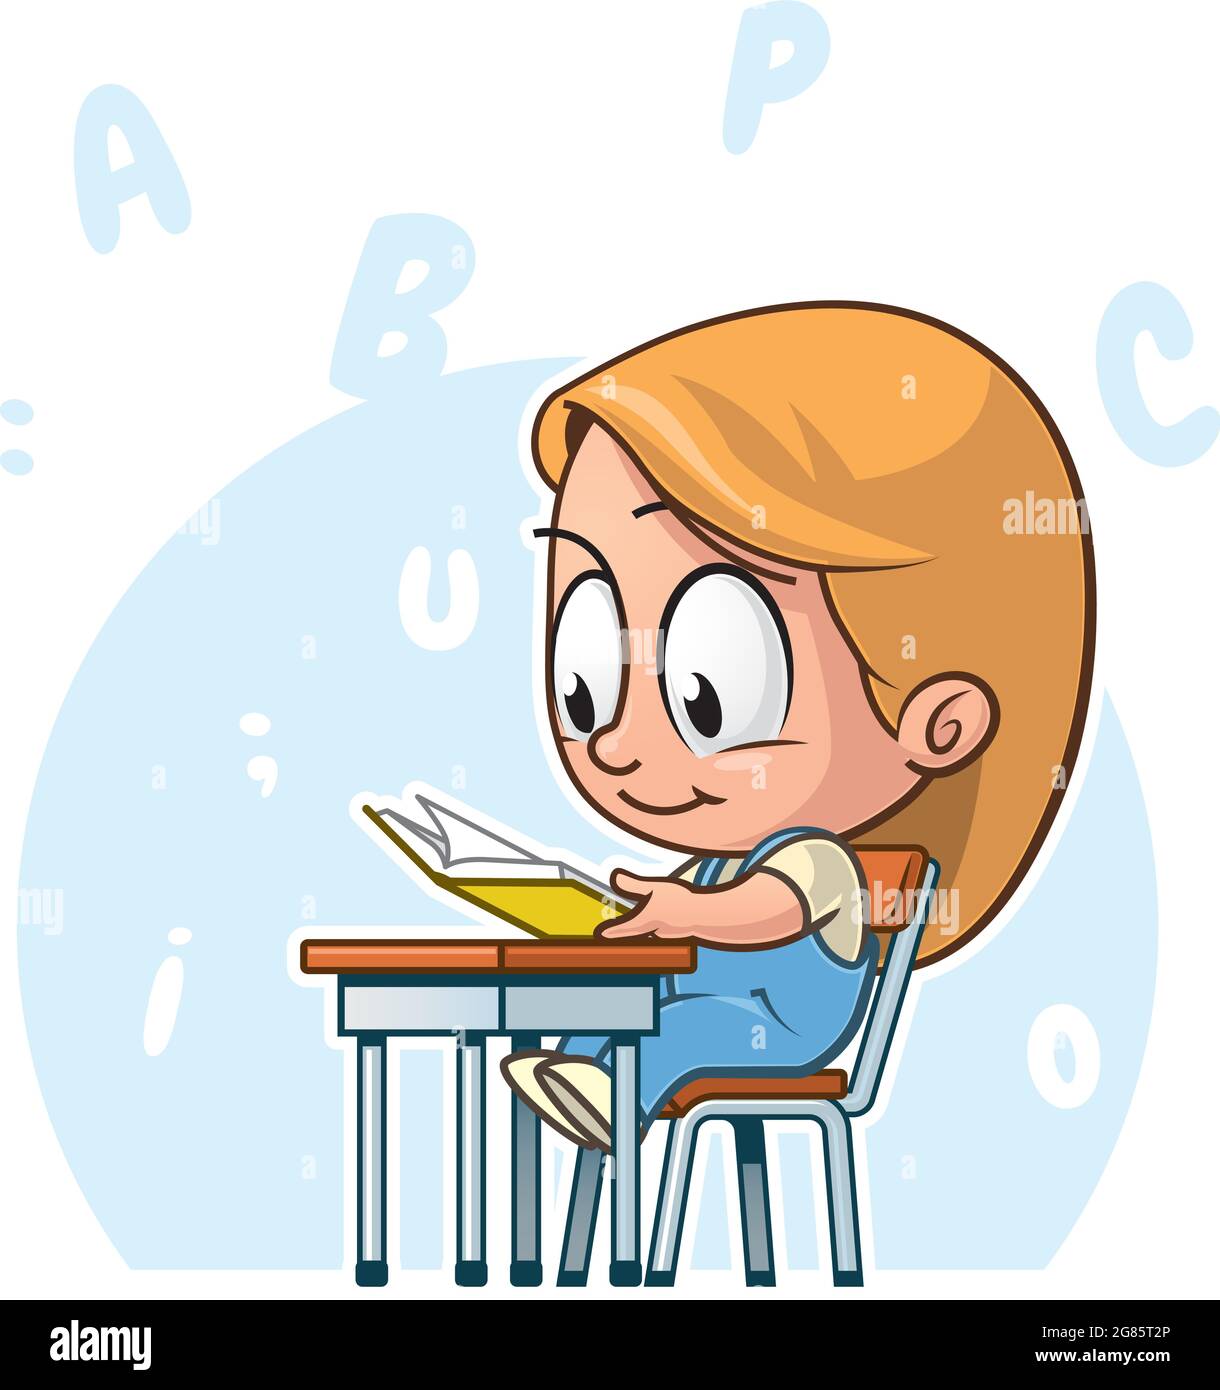 Illustrazione cartoon di un bambino elementare che legge un libro Illustrazione Vettoriale